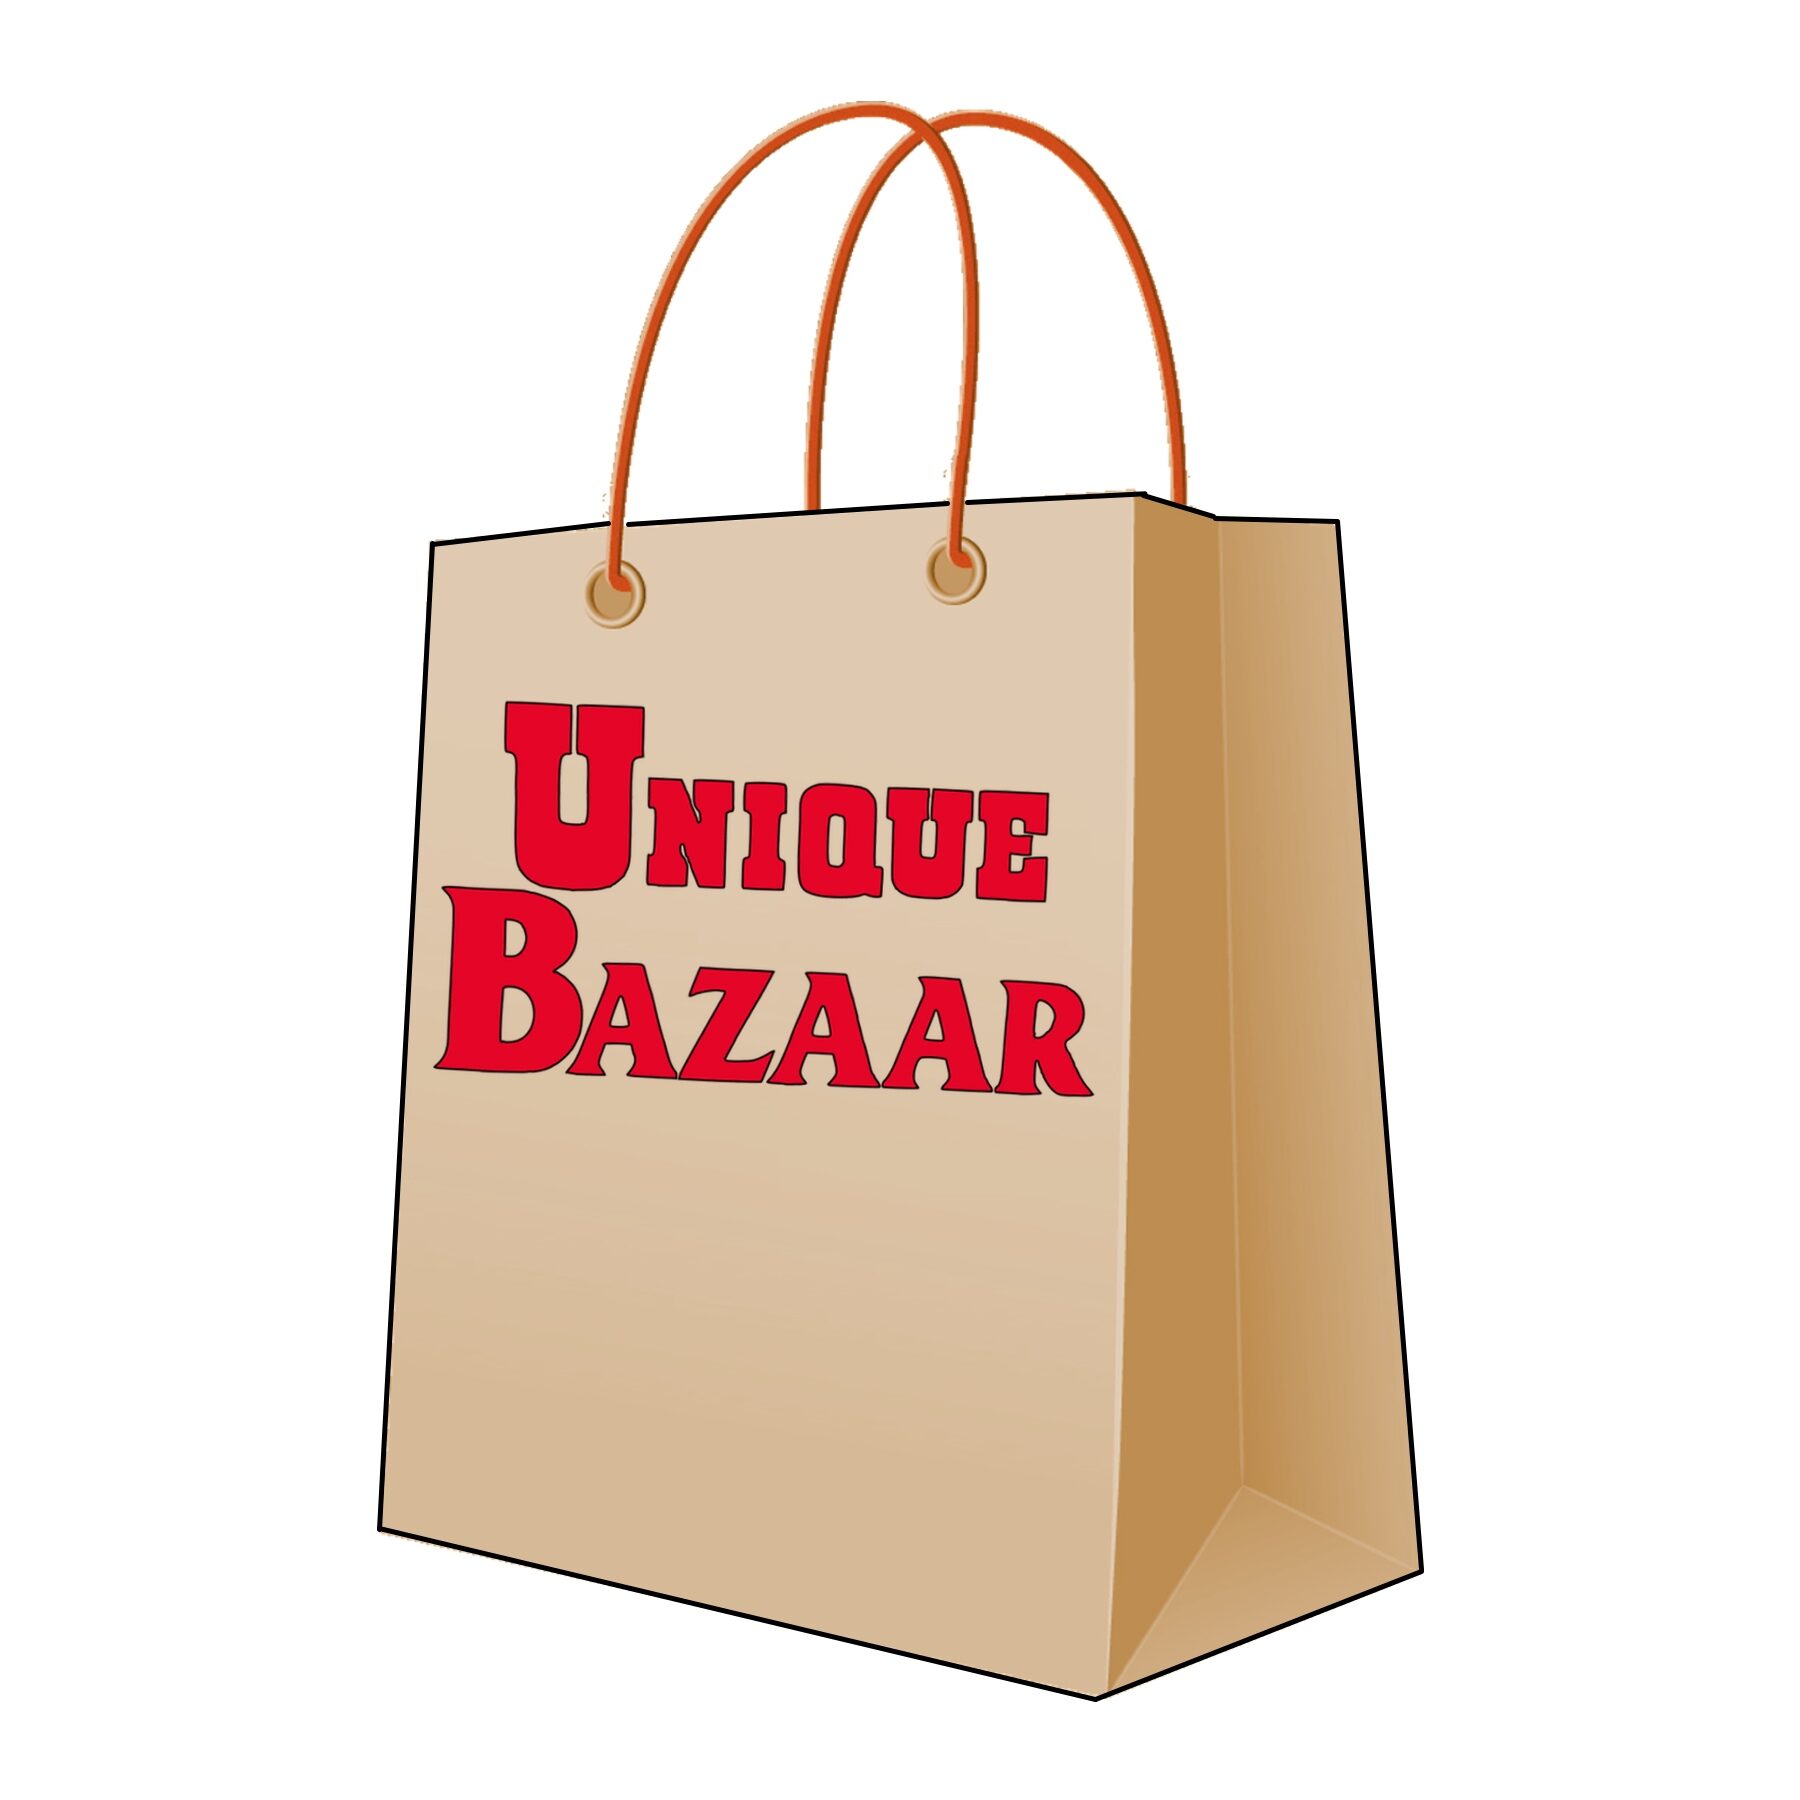 Unique Bazaar